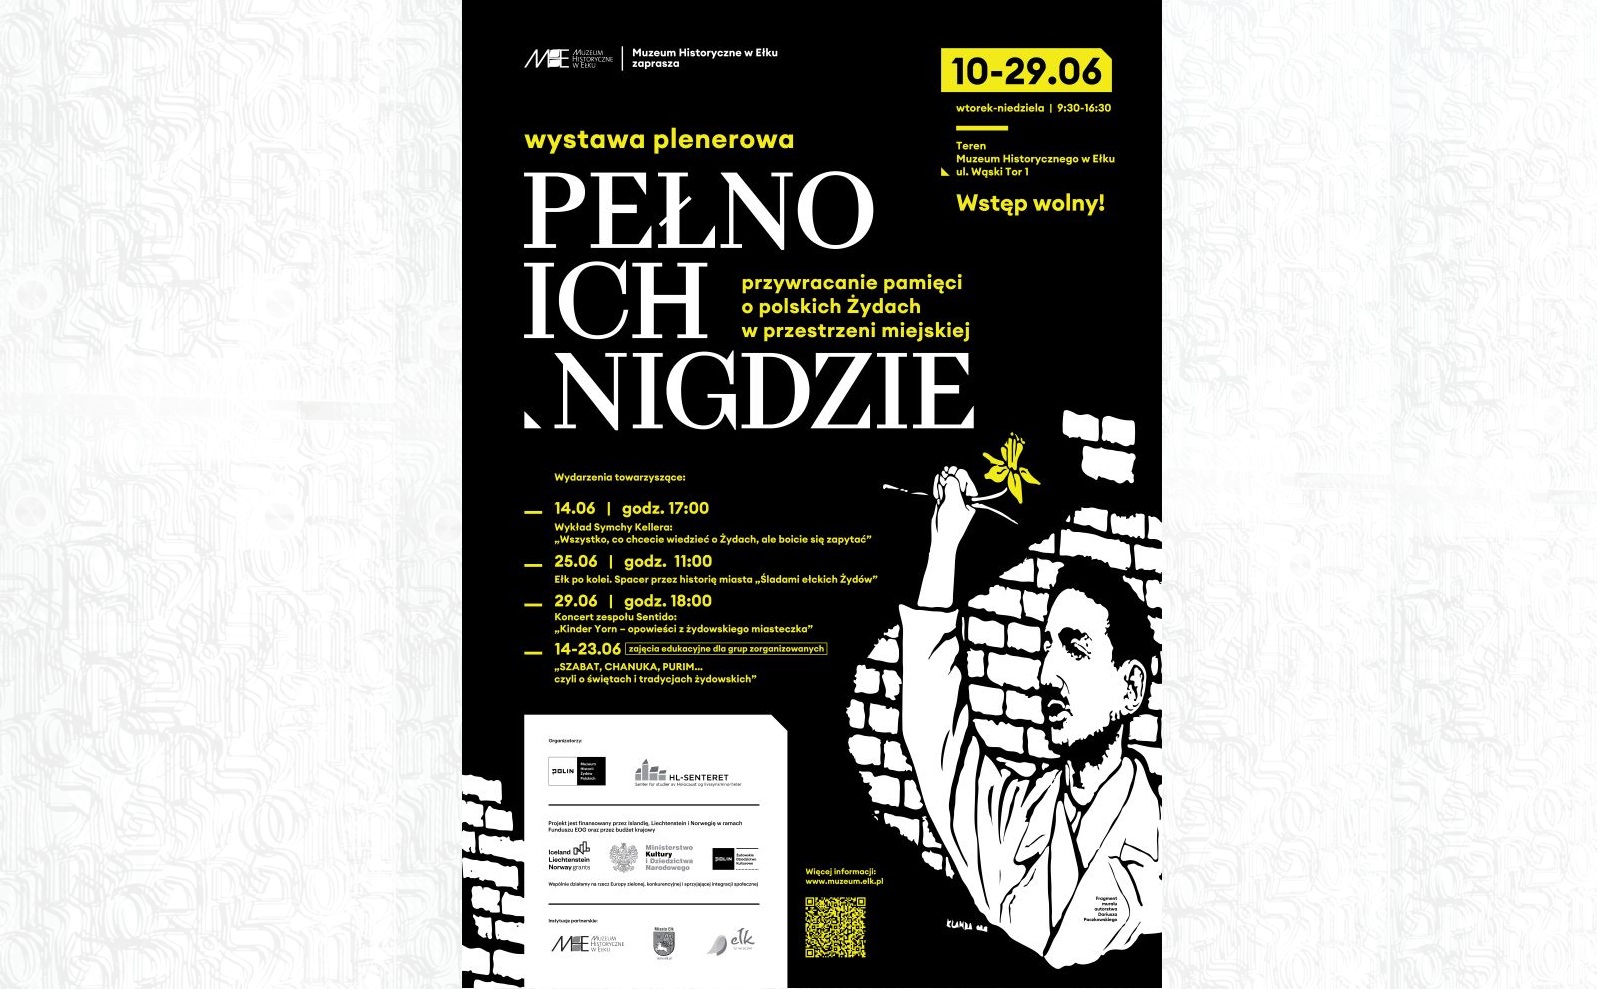 Plakat z rozpiską wydarzeń towarzyszących wystawie "Pełno ich nigdzie" w Ełku